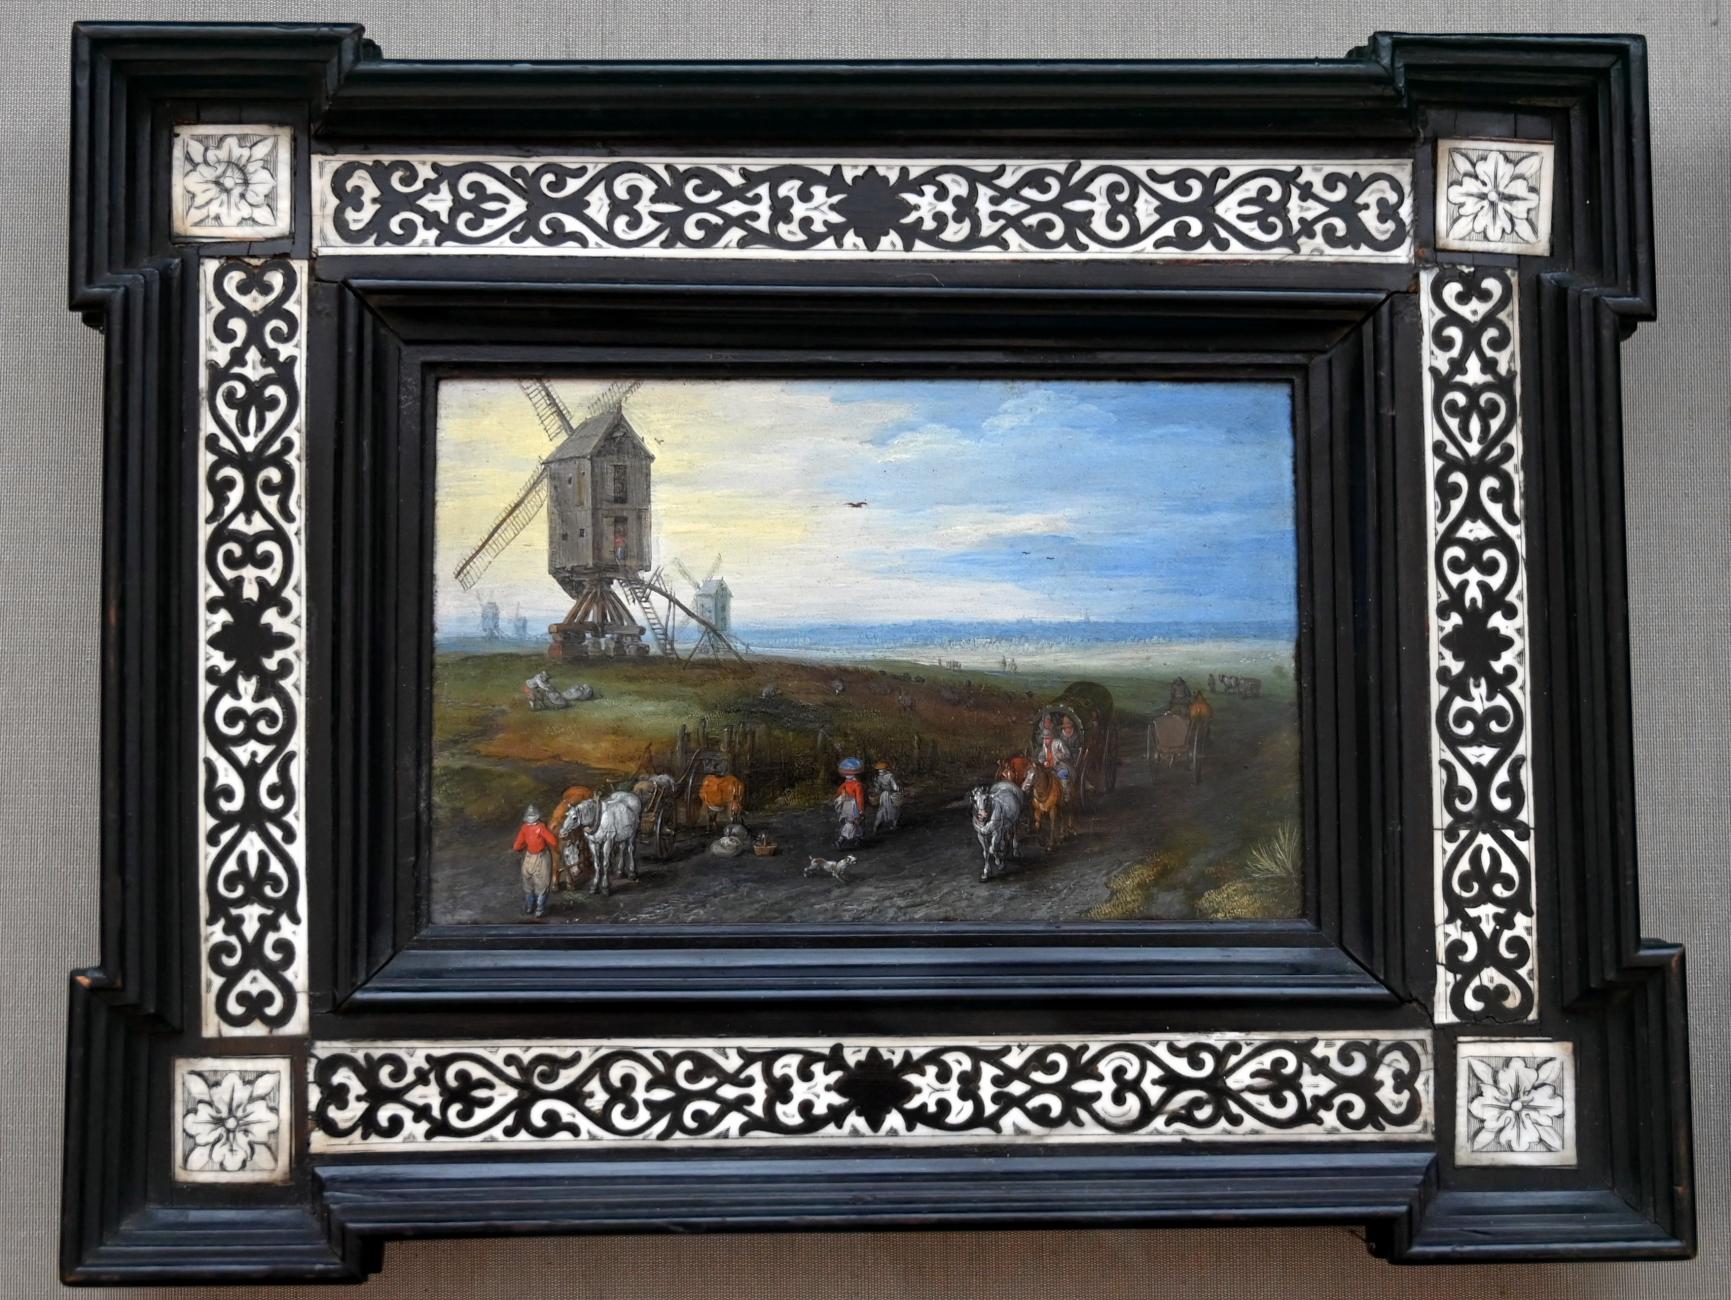 Jan Brueghel der Ältere (Samtbrueghel, Blumenbrueghel) (1593–1621), Windmühlen auf weiter Ebene, München, Alte Pinakothek, Obergeschoss Kabinett 8, 1611